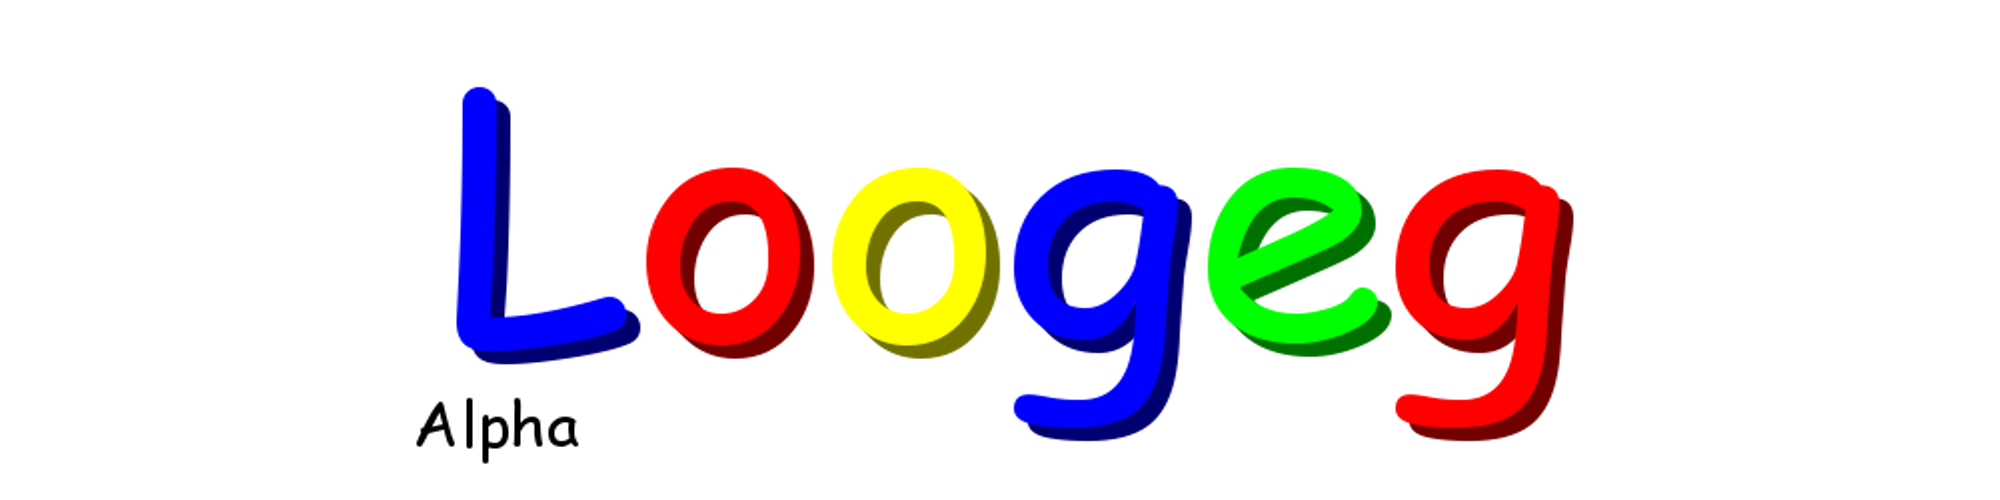 Loogeg Alpha Logo